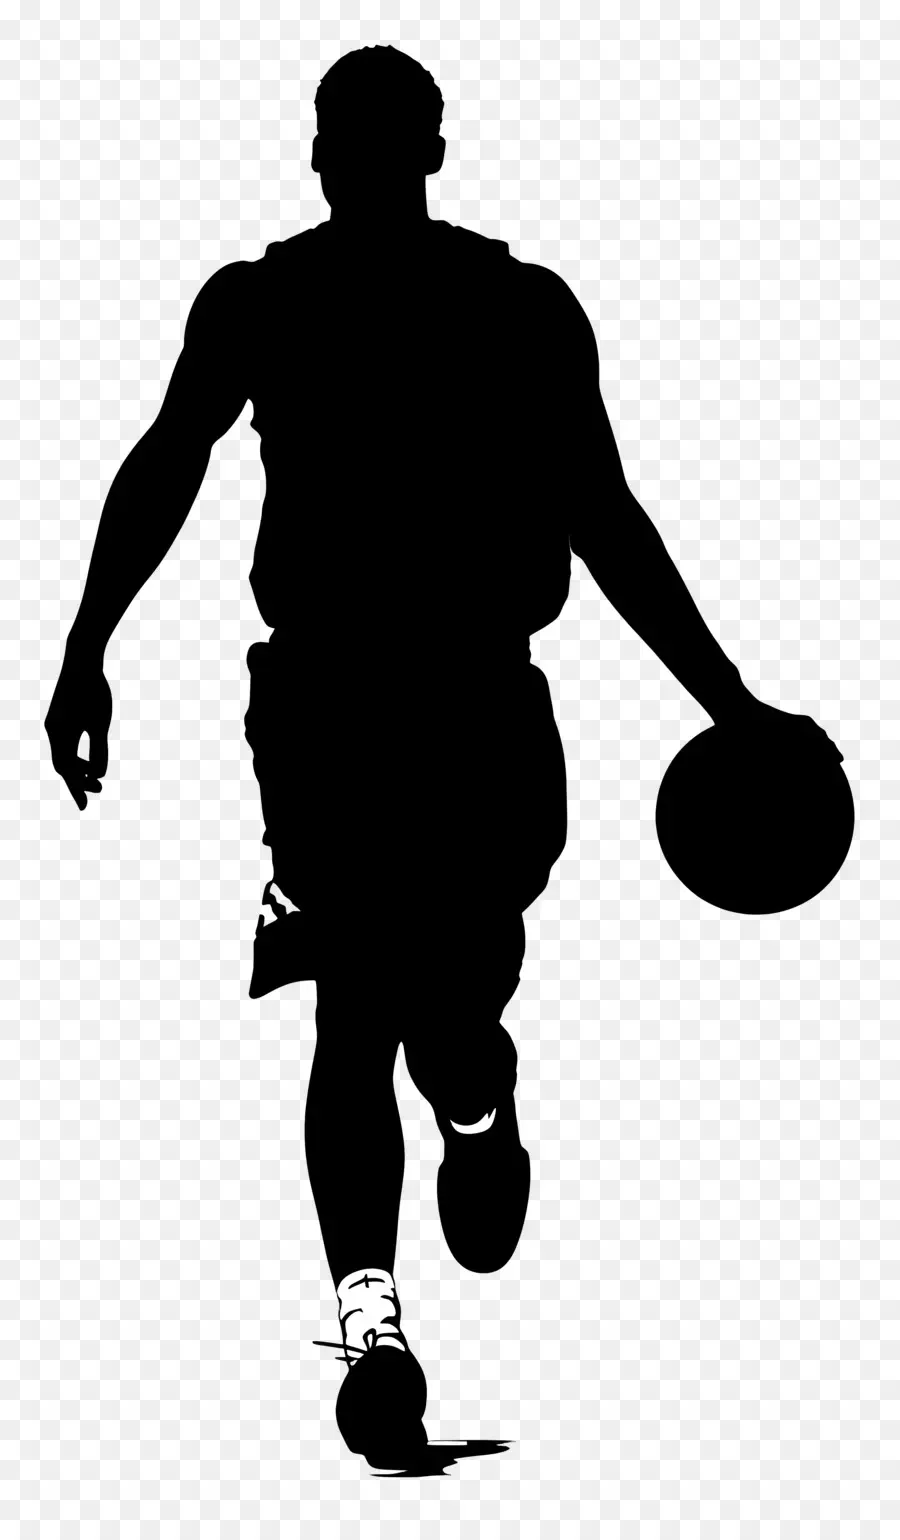 người đàn ông bóng rổ hình bóng đi bộ đồng phục bóng tối - Người mặc đồng phục mang vật không xác định, bóng tối có thể nhìn thấy